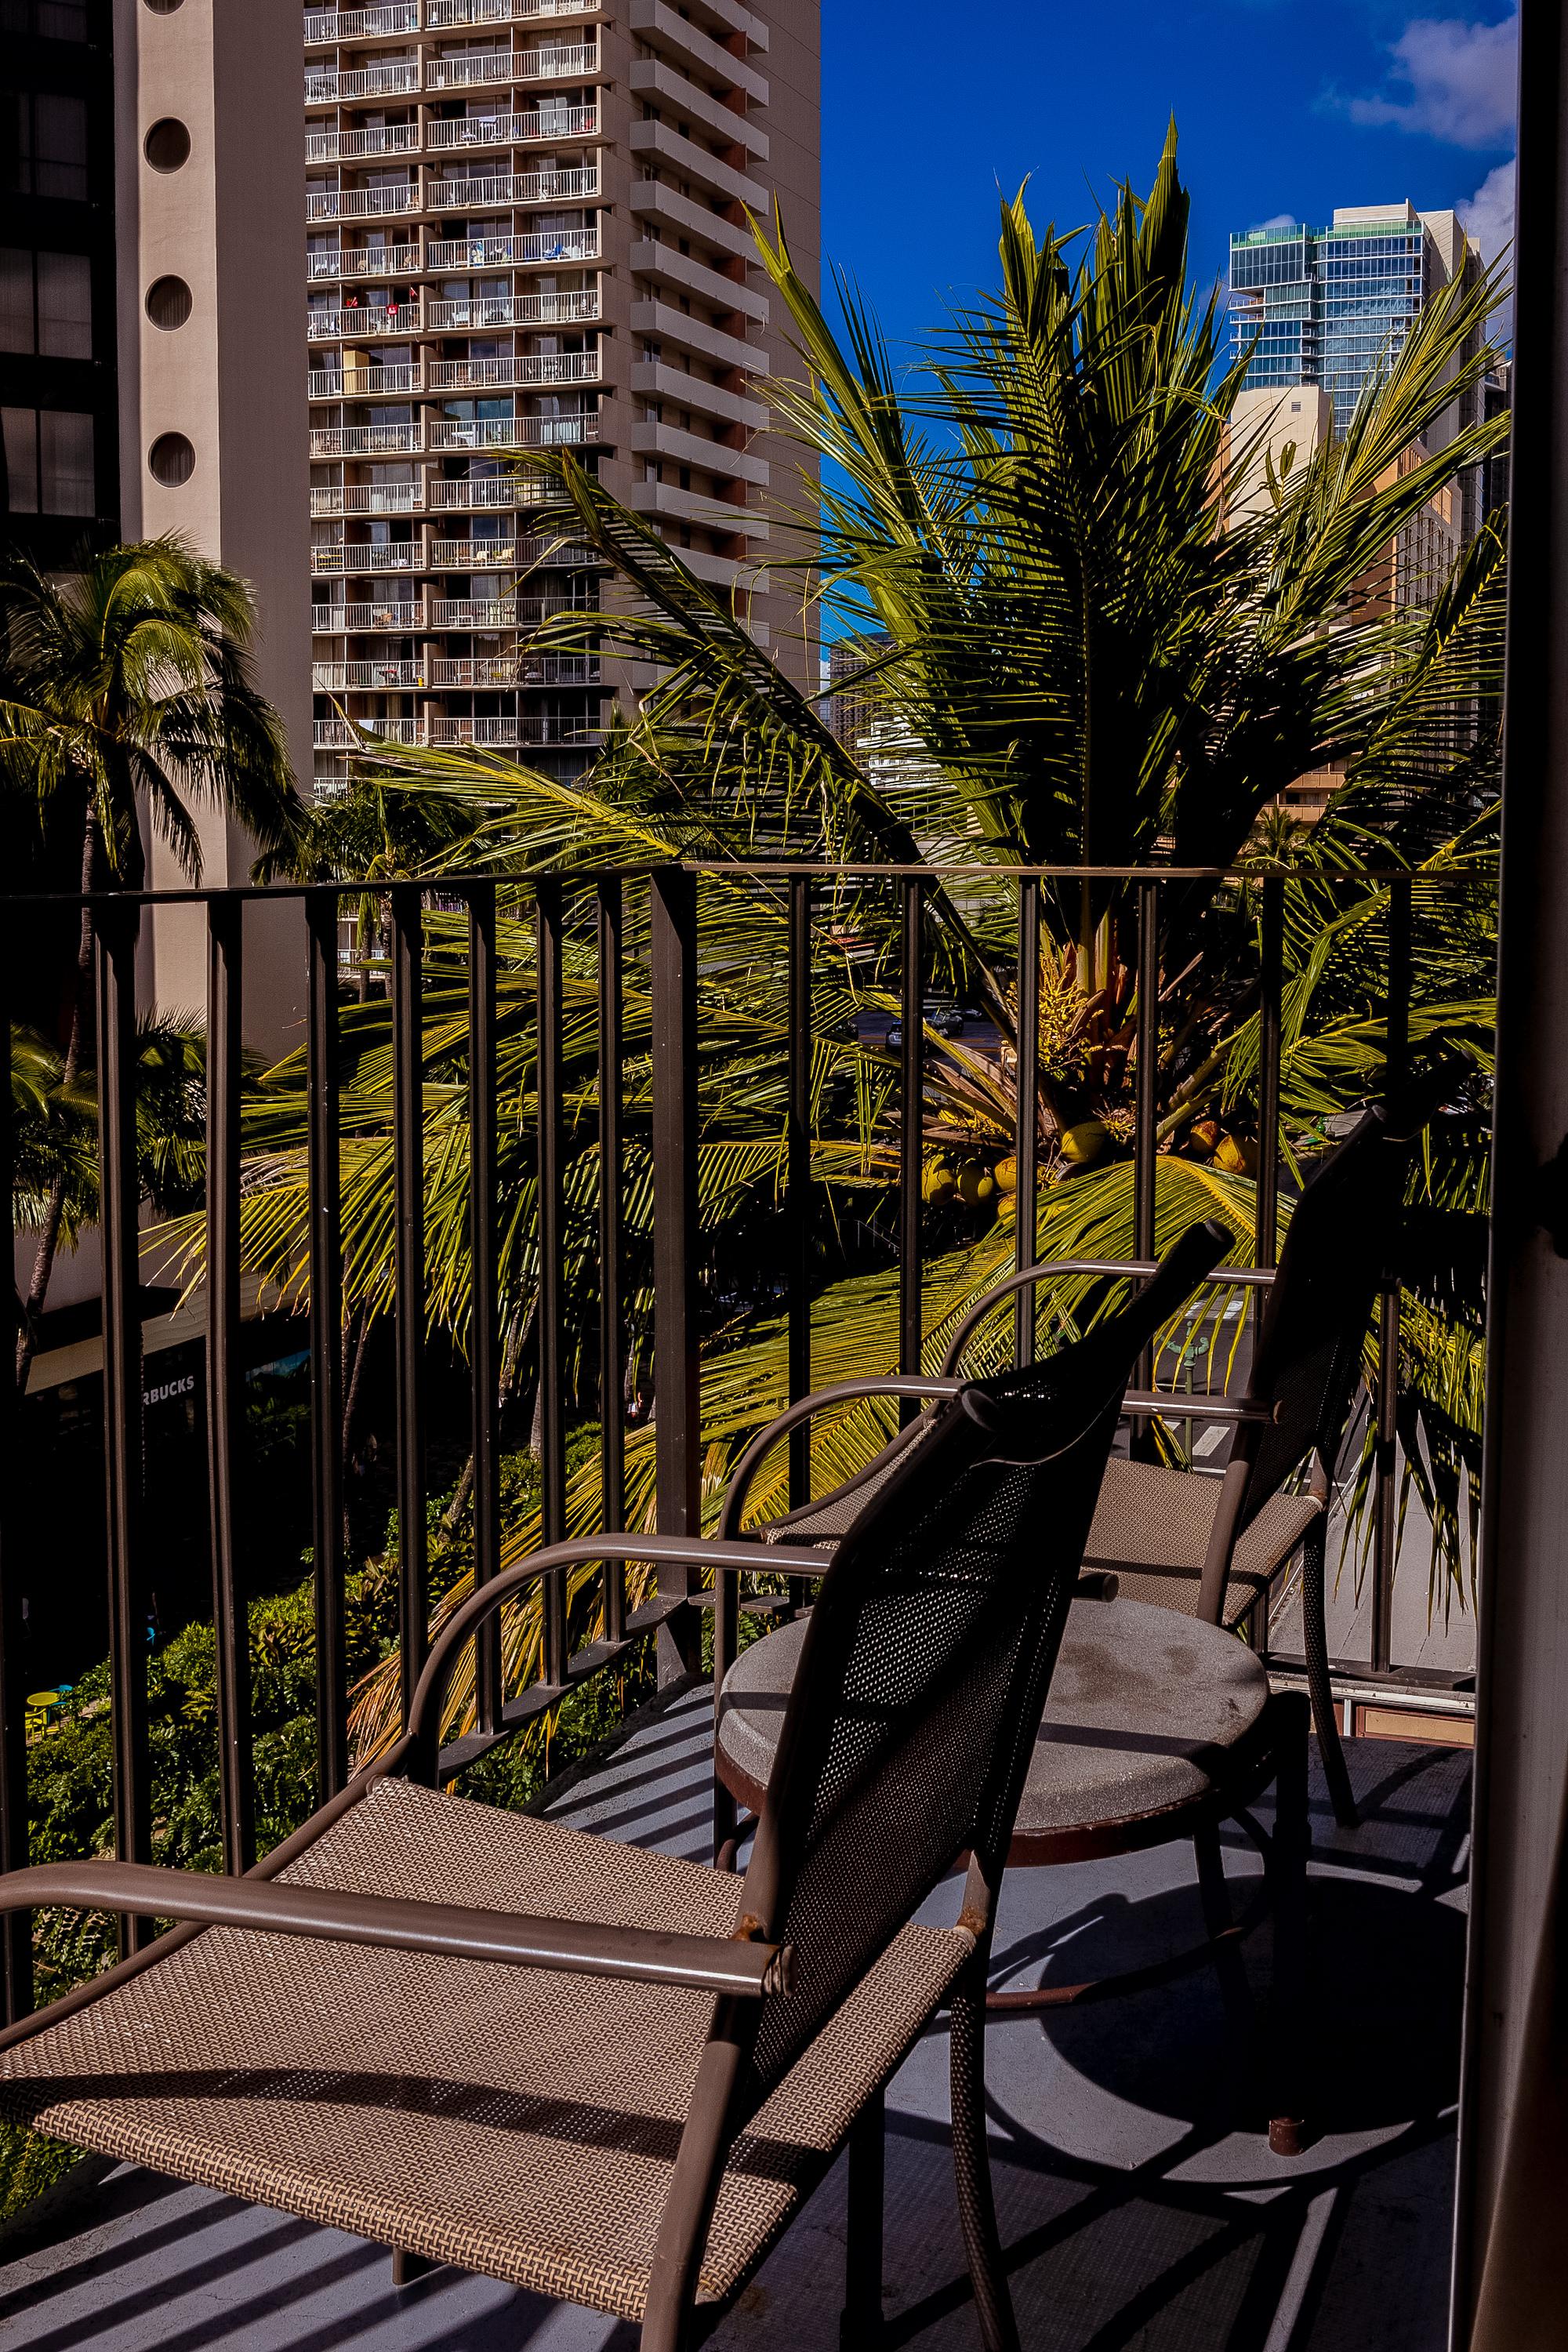 هونولولو Ohia Waikiki Studio Suites المظهر الخارجي الصورة